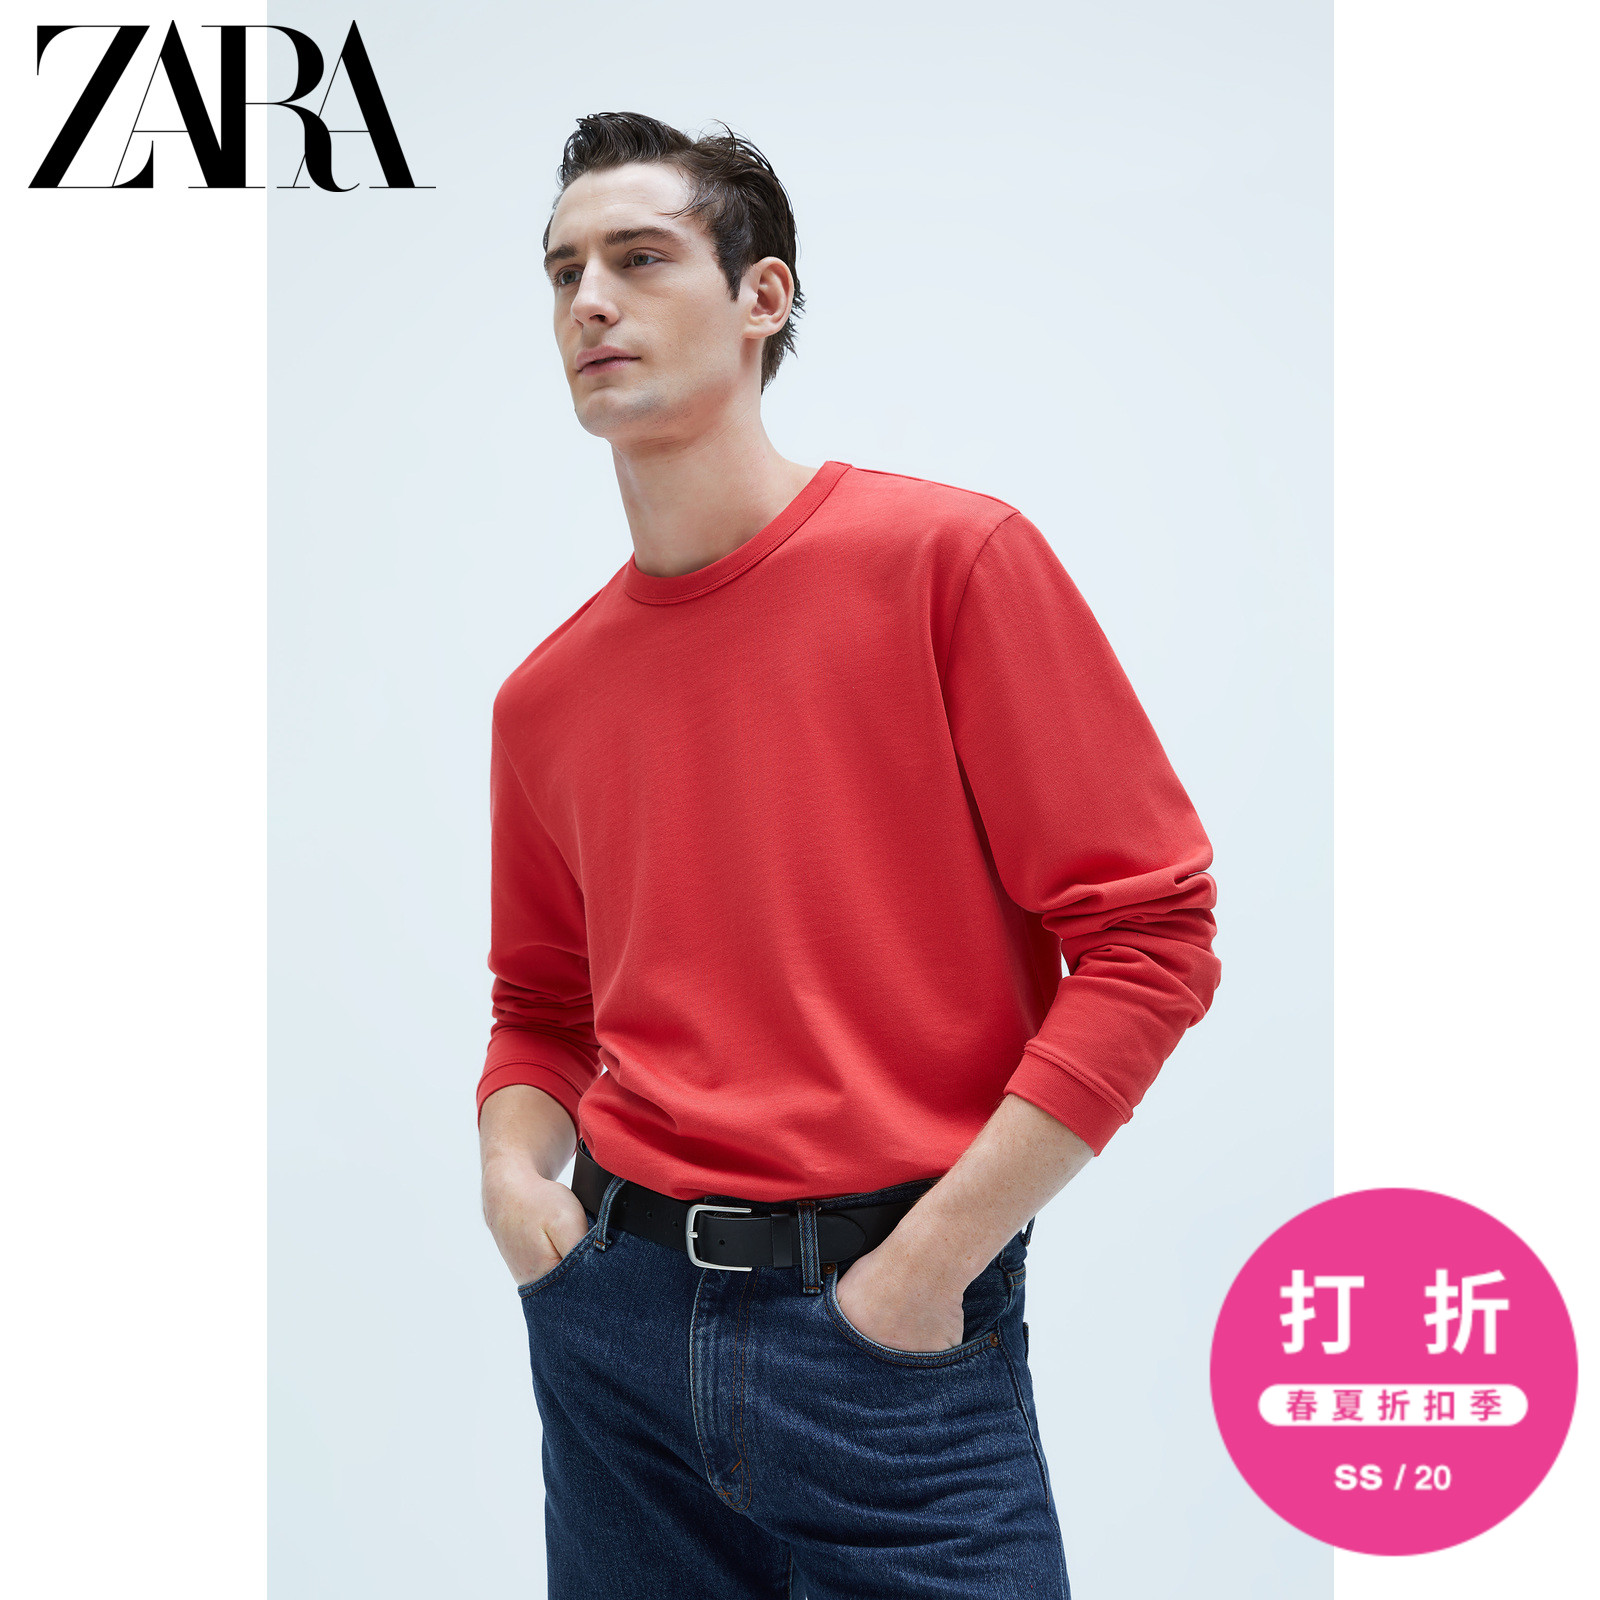 ZARA 新款 男装 长袖紧凑版型打底圆领T恤 09240423649